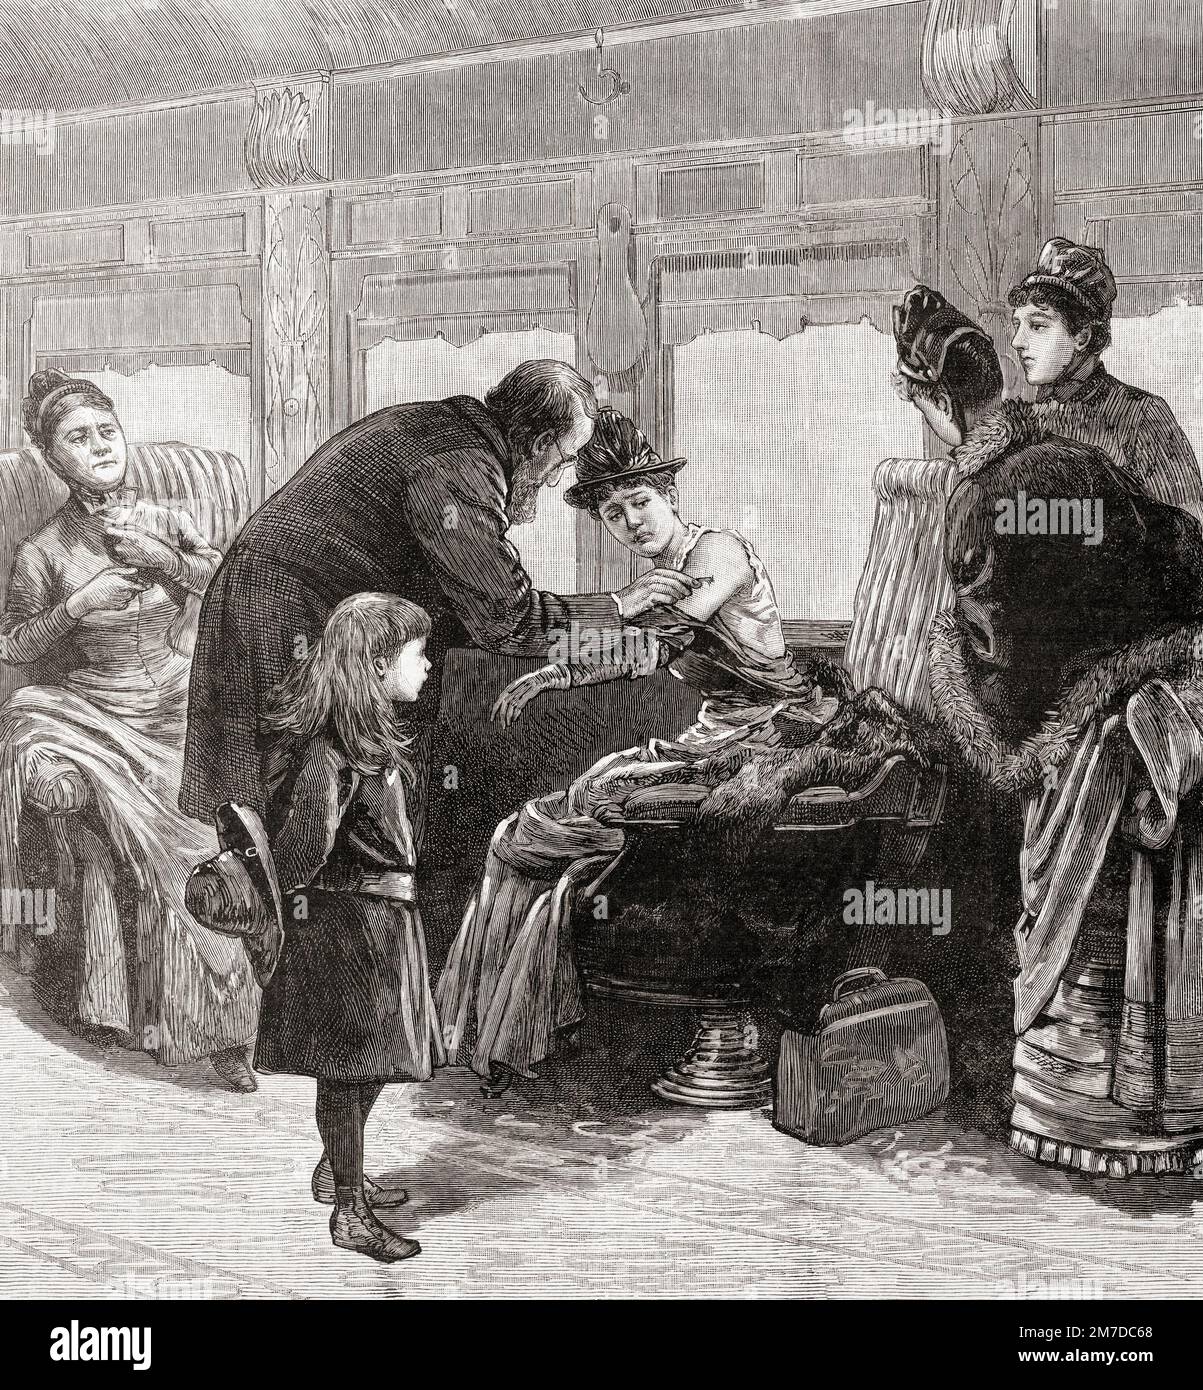 Kanadische Gesundheitsbehörden impfen Passagiere im Zug nach USA nach Pockenausbruch in Montreal. Nach einer Illustration in Frank Leslies illustrierter Zeitung, 26. Dezember 1885. Stockfoto